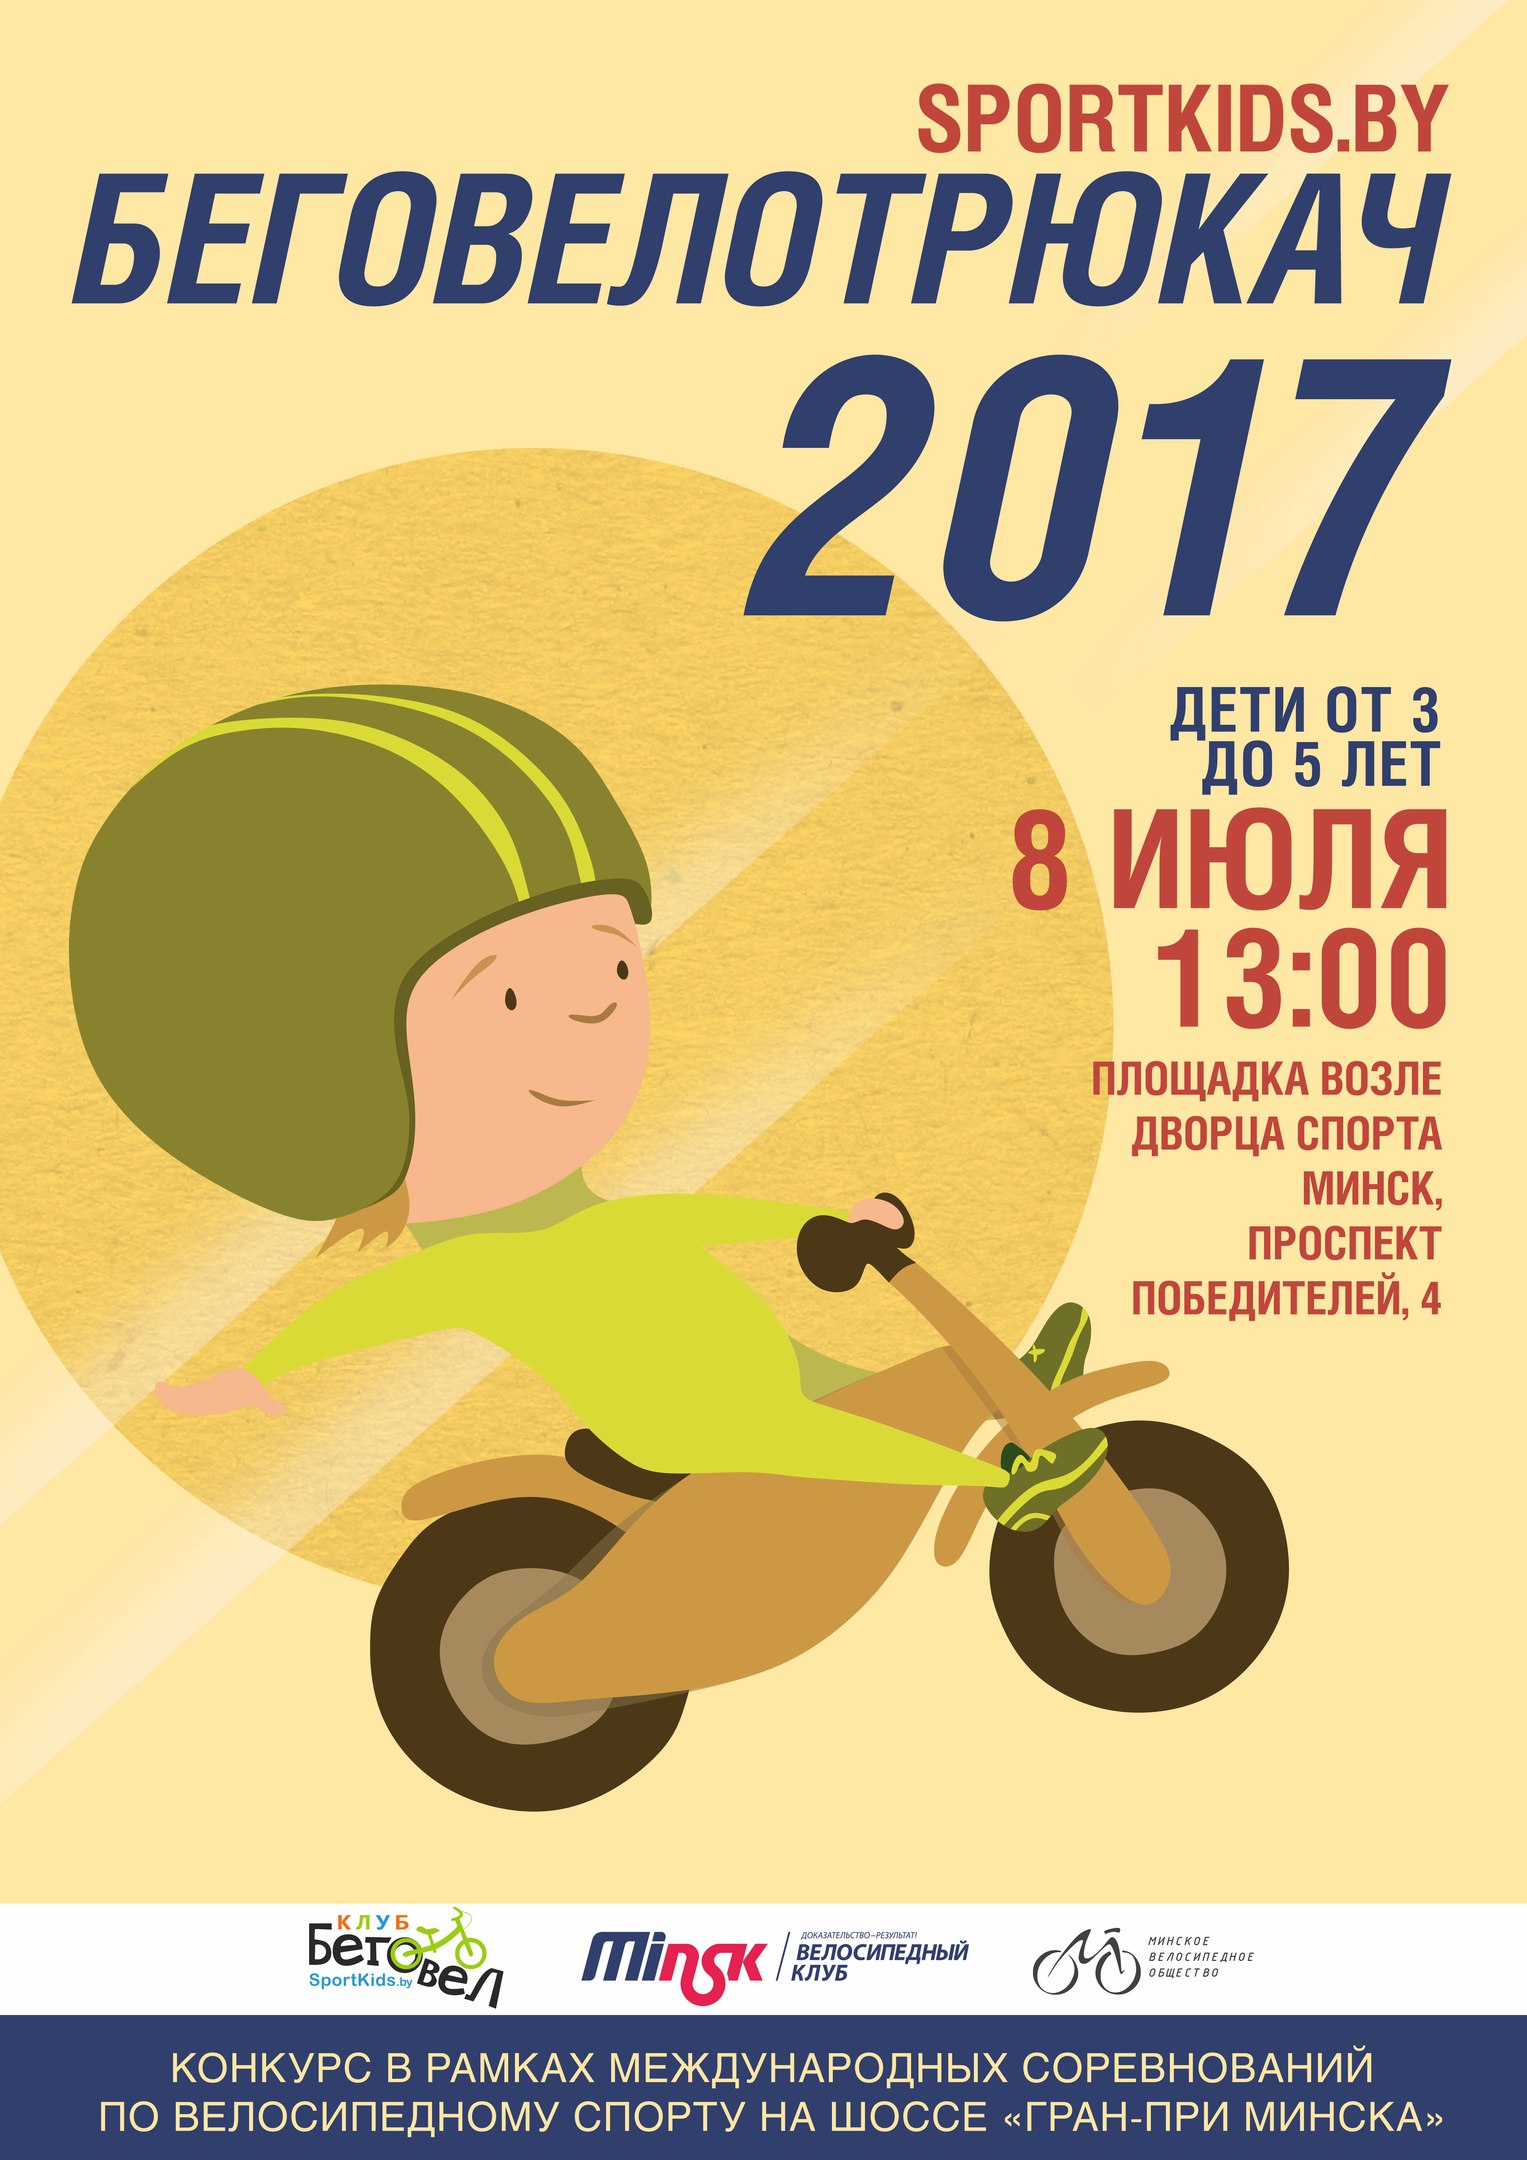 Соревнования по трюкам на беговелах в Минске